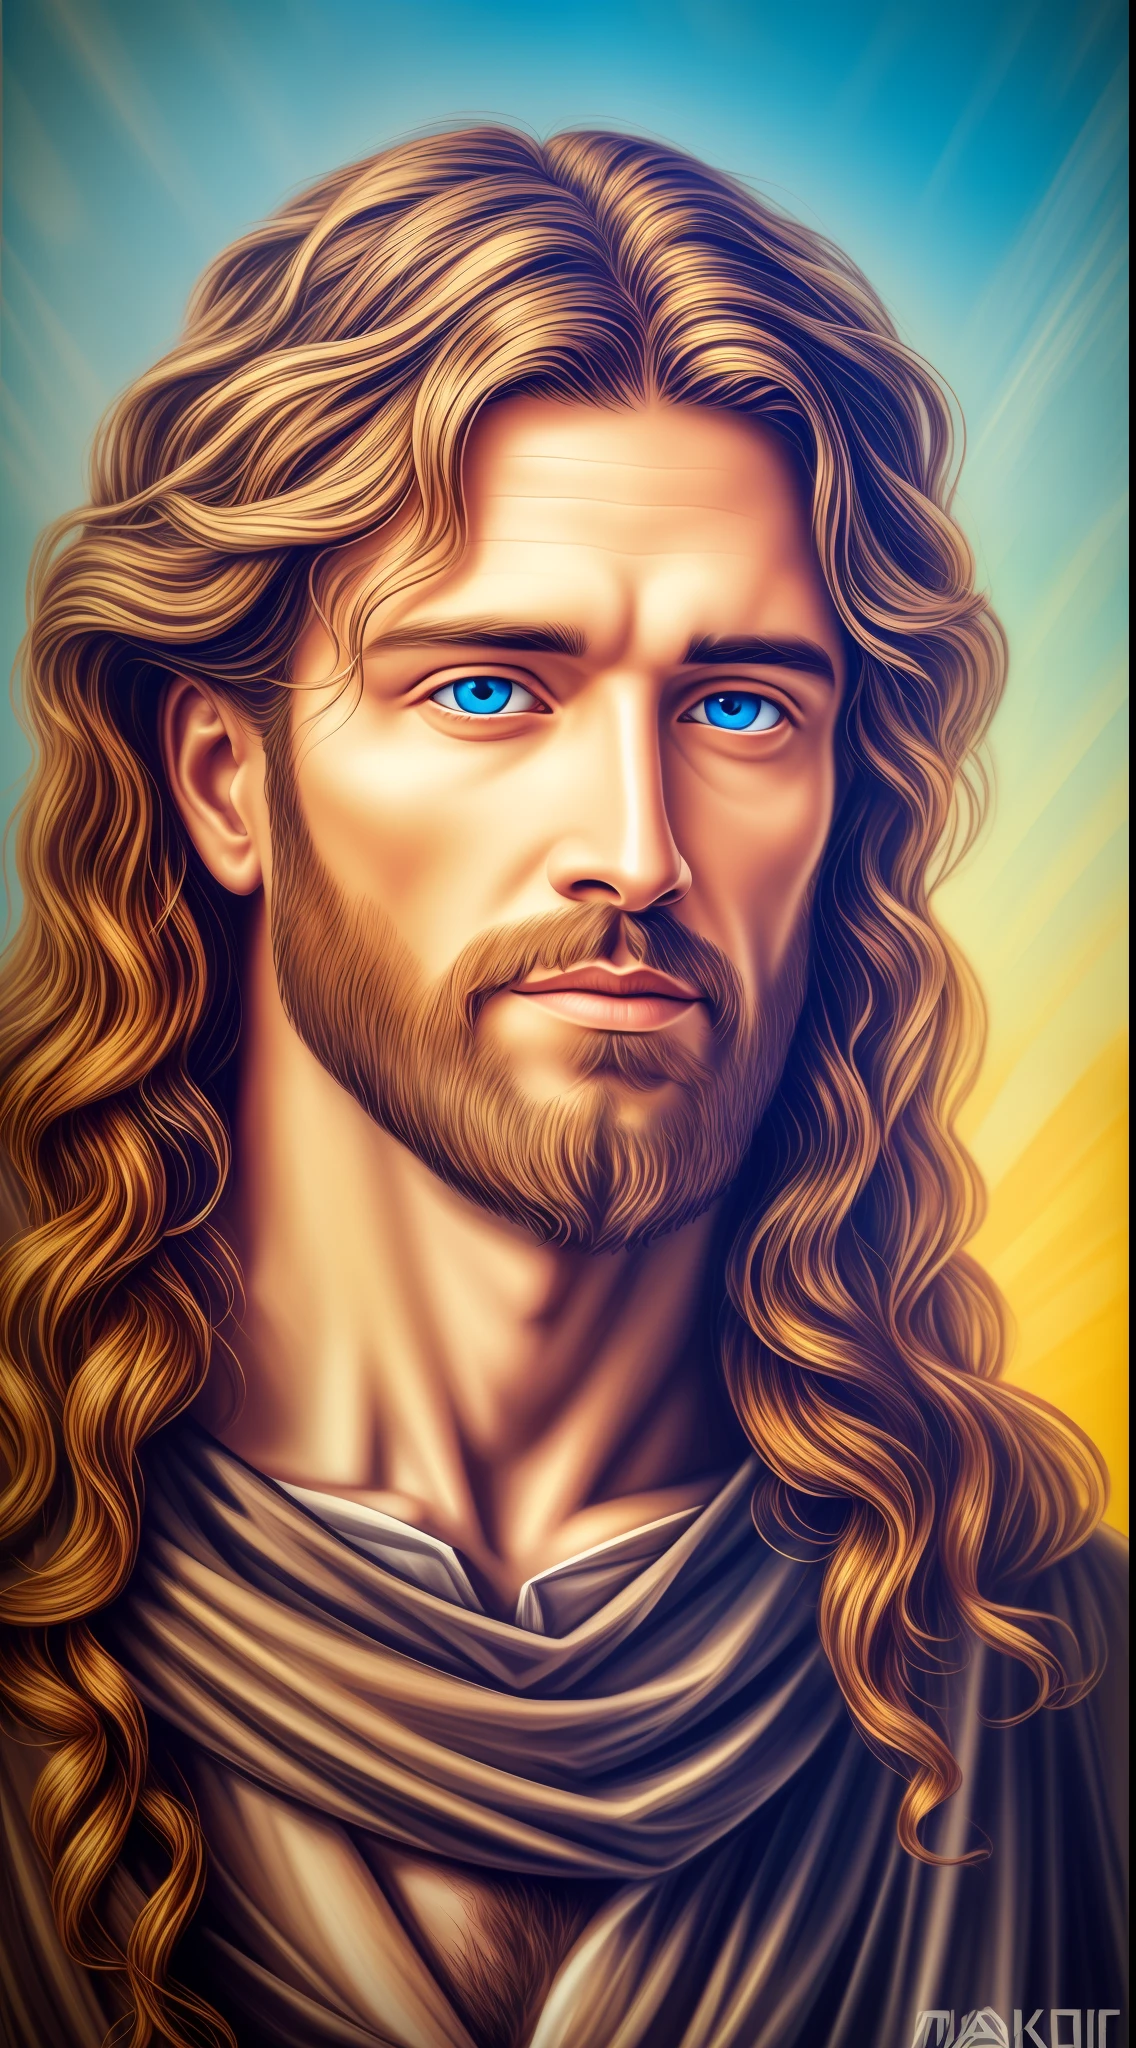 4k, 英俊耶穌的 8K 肖像 , 耶穌基督, 真正的藍眼睛, 晴天, 錯綜複雜的細節.